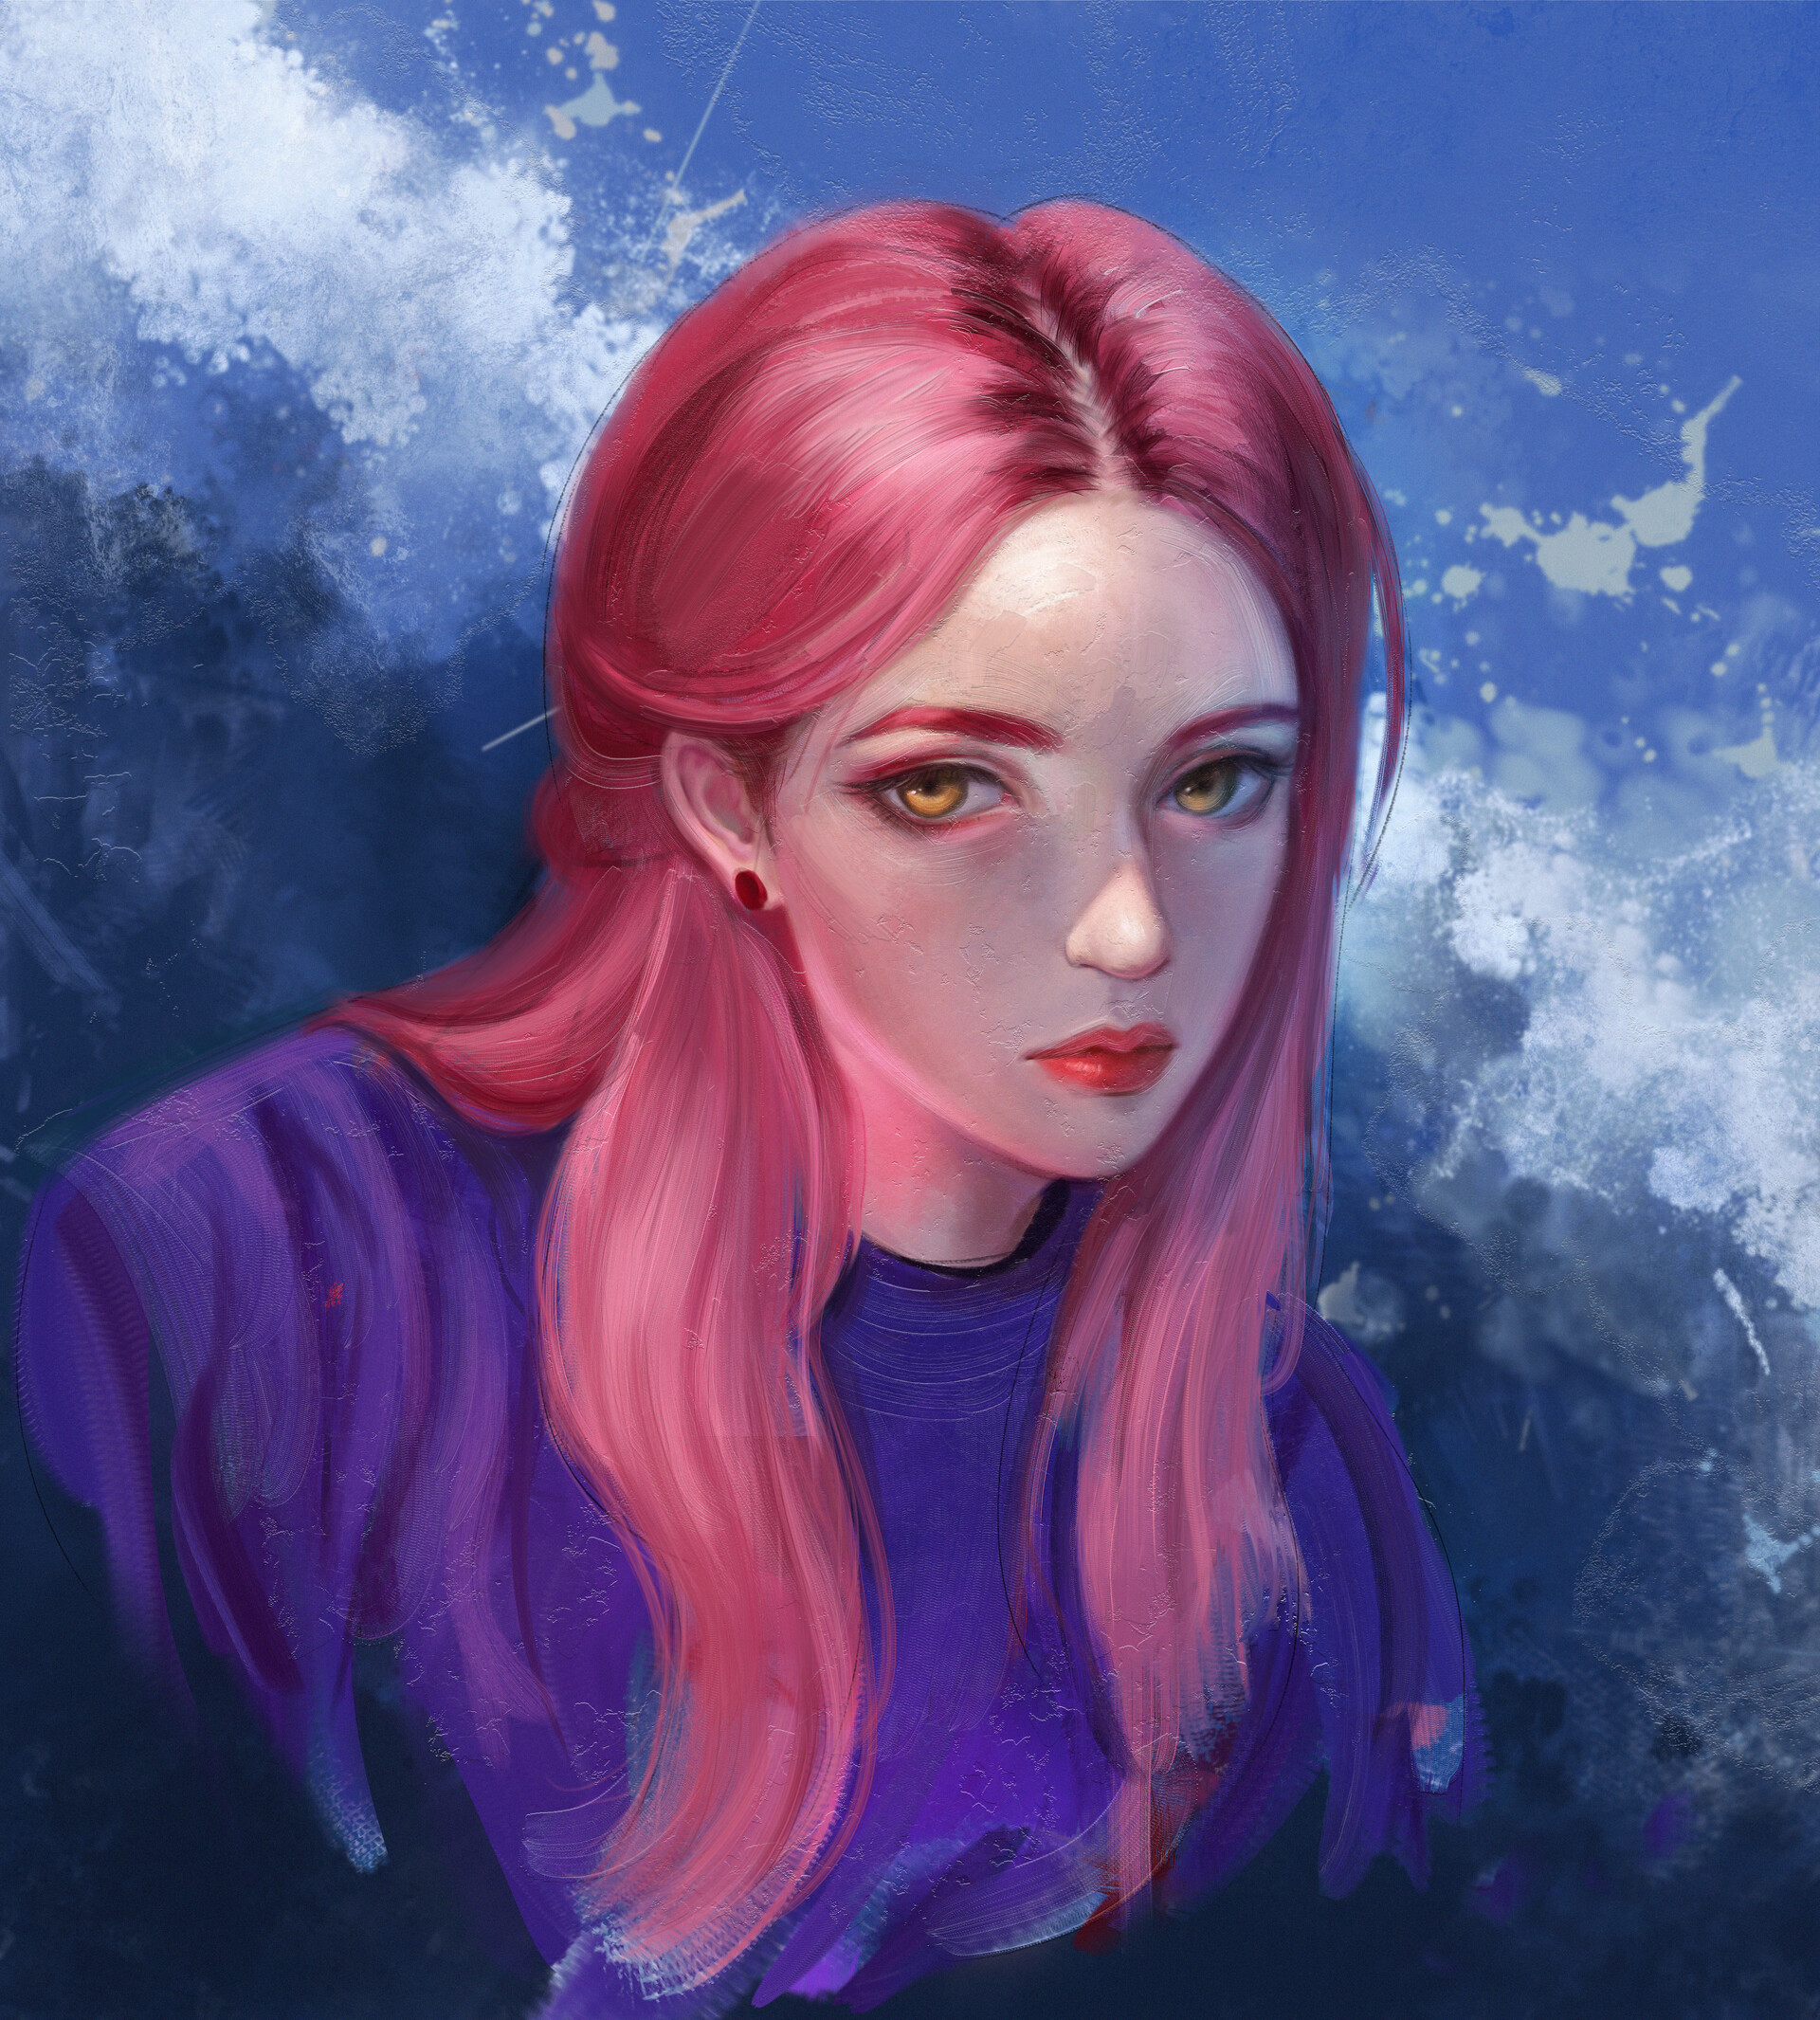 ArtStation - Pink hair Girl